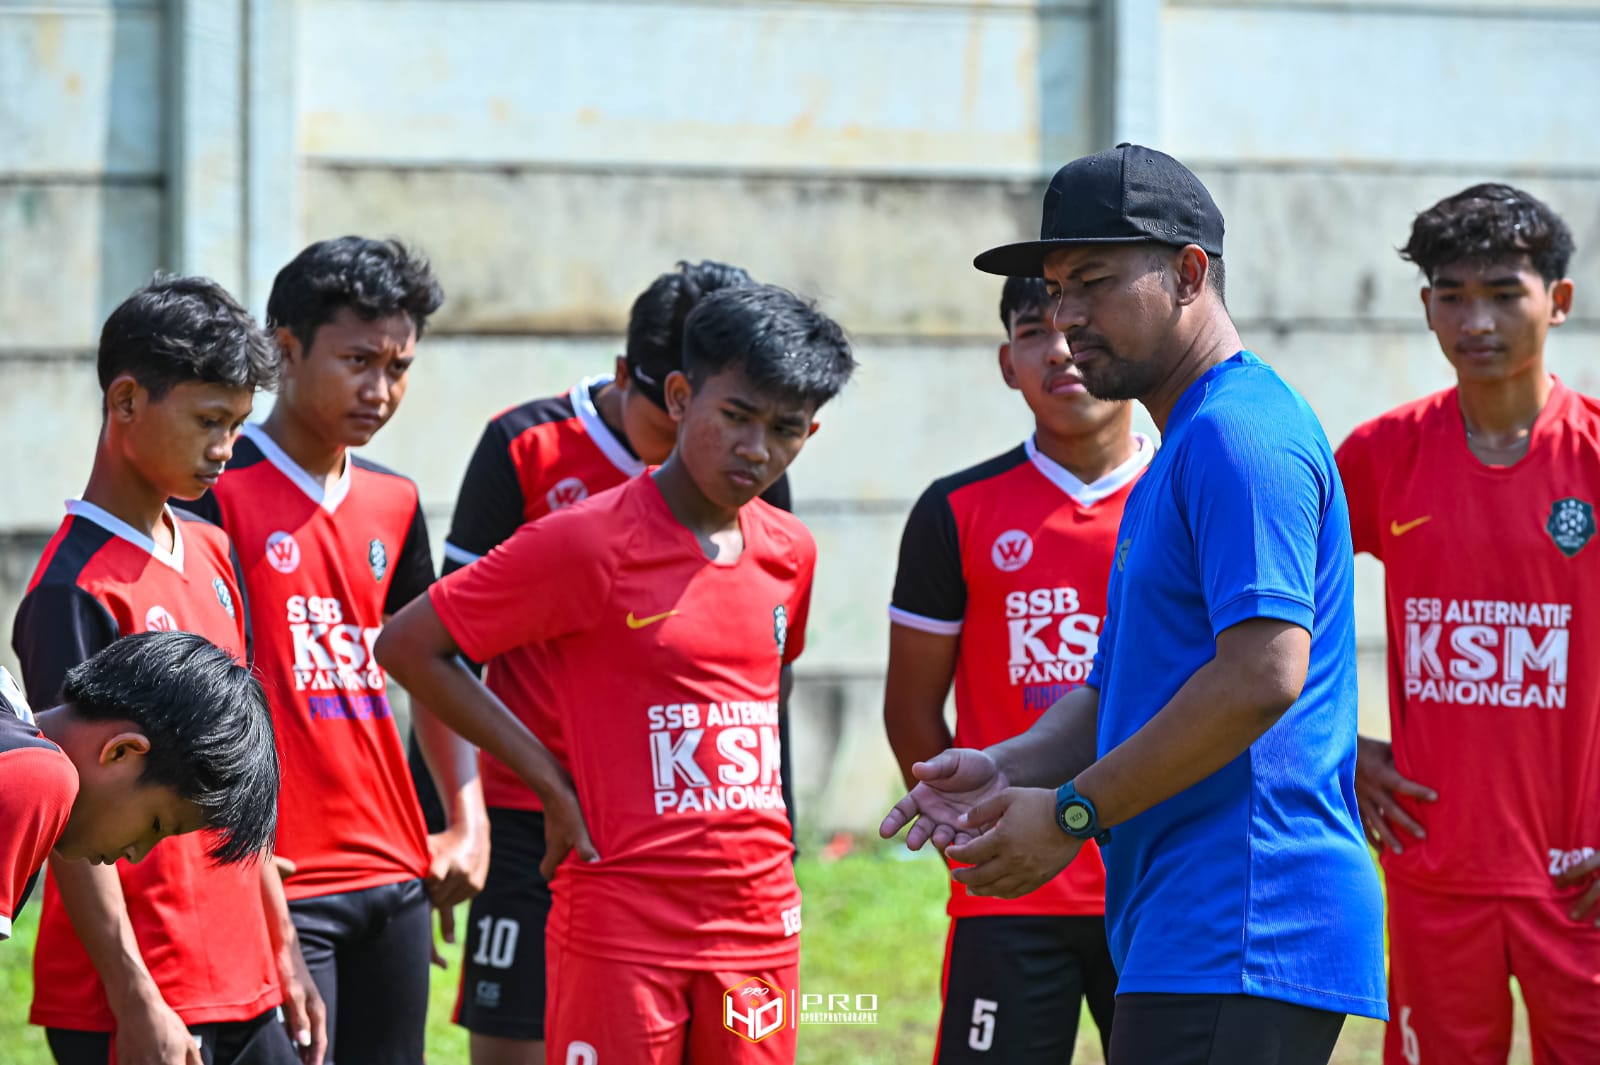 Liga TopSkor U-15: Pelatih KSM Panongan Ungkap Peluang ke Babak Gugur Masih Terbuka Lebar